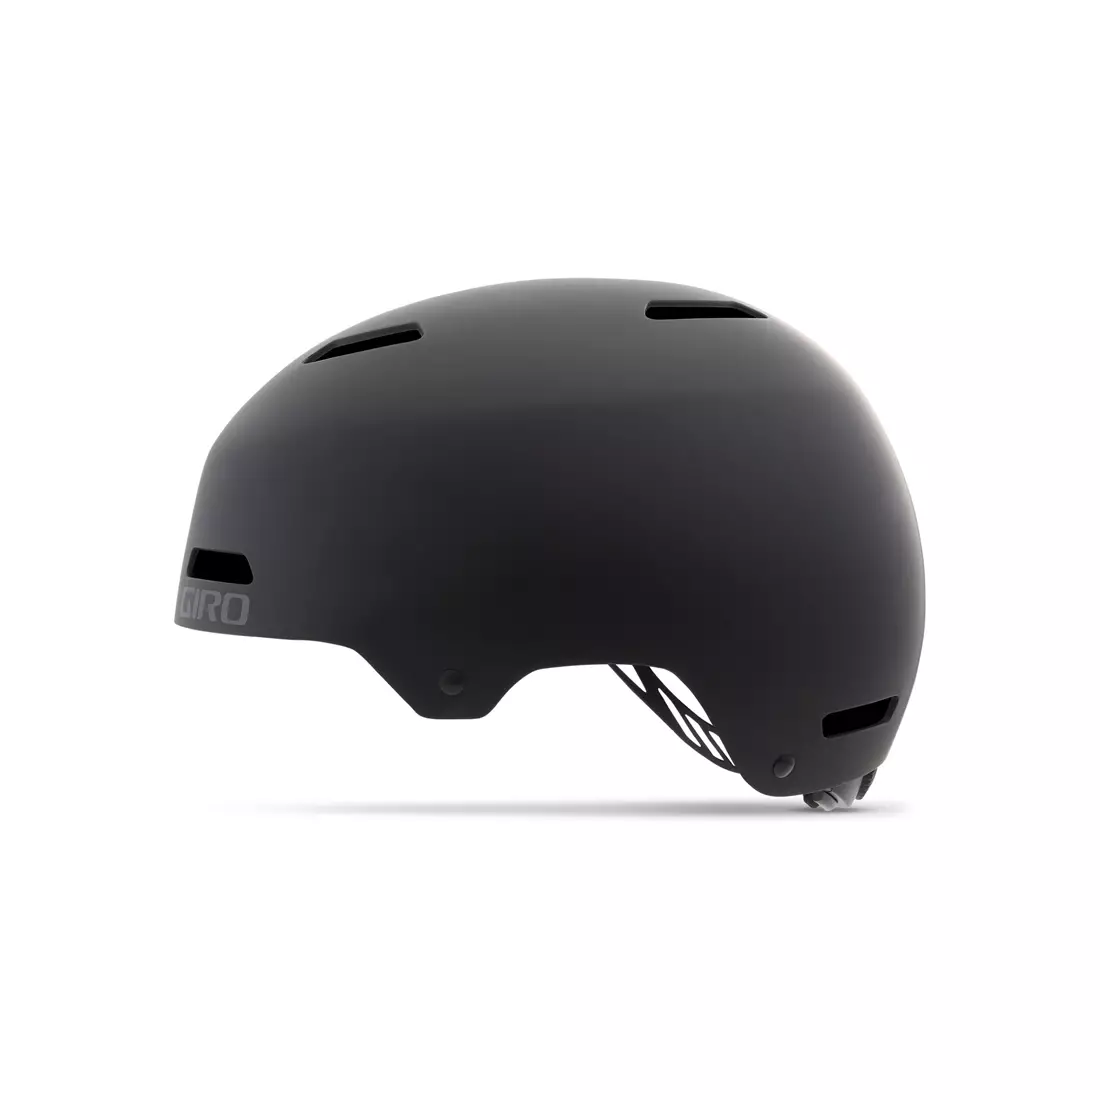 GIRO bmx helmet QUARTER FS matte black GR-7075325 